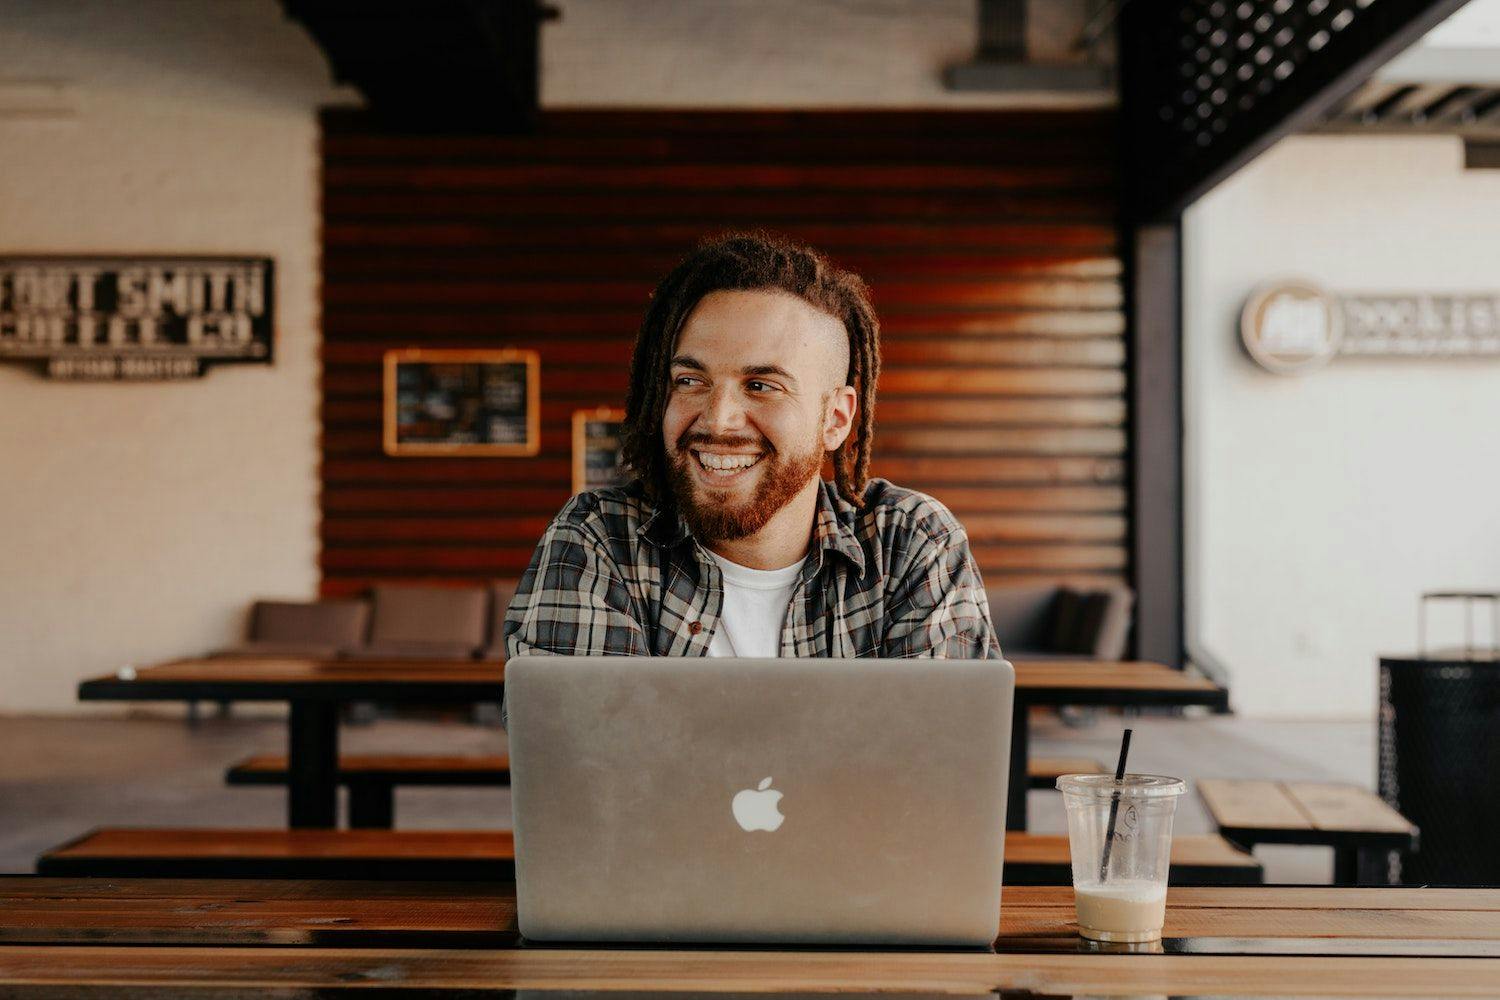 Man smiling working on laptop